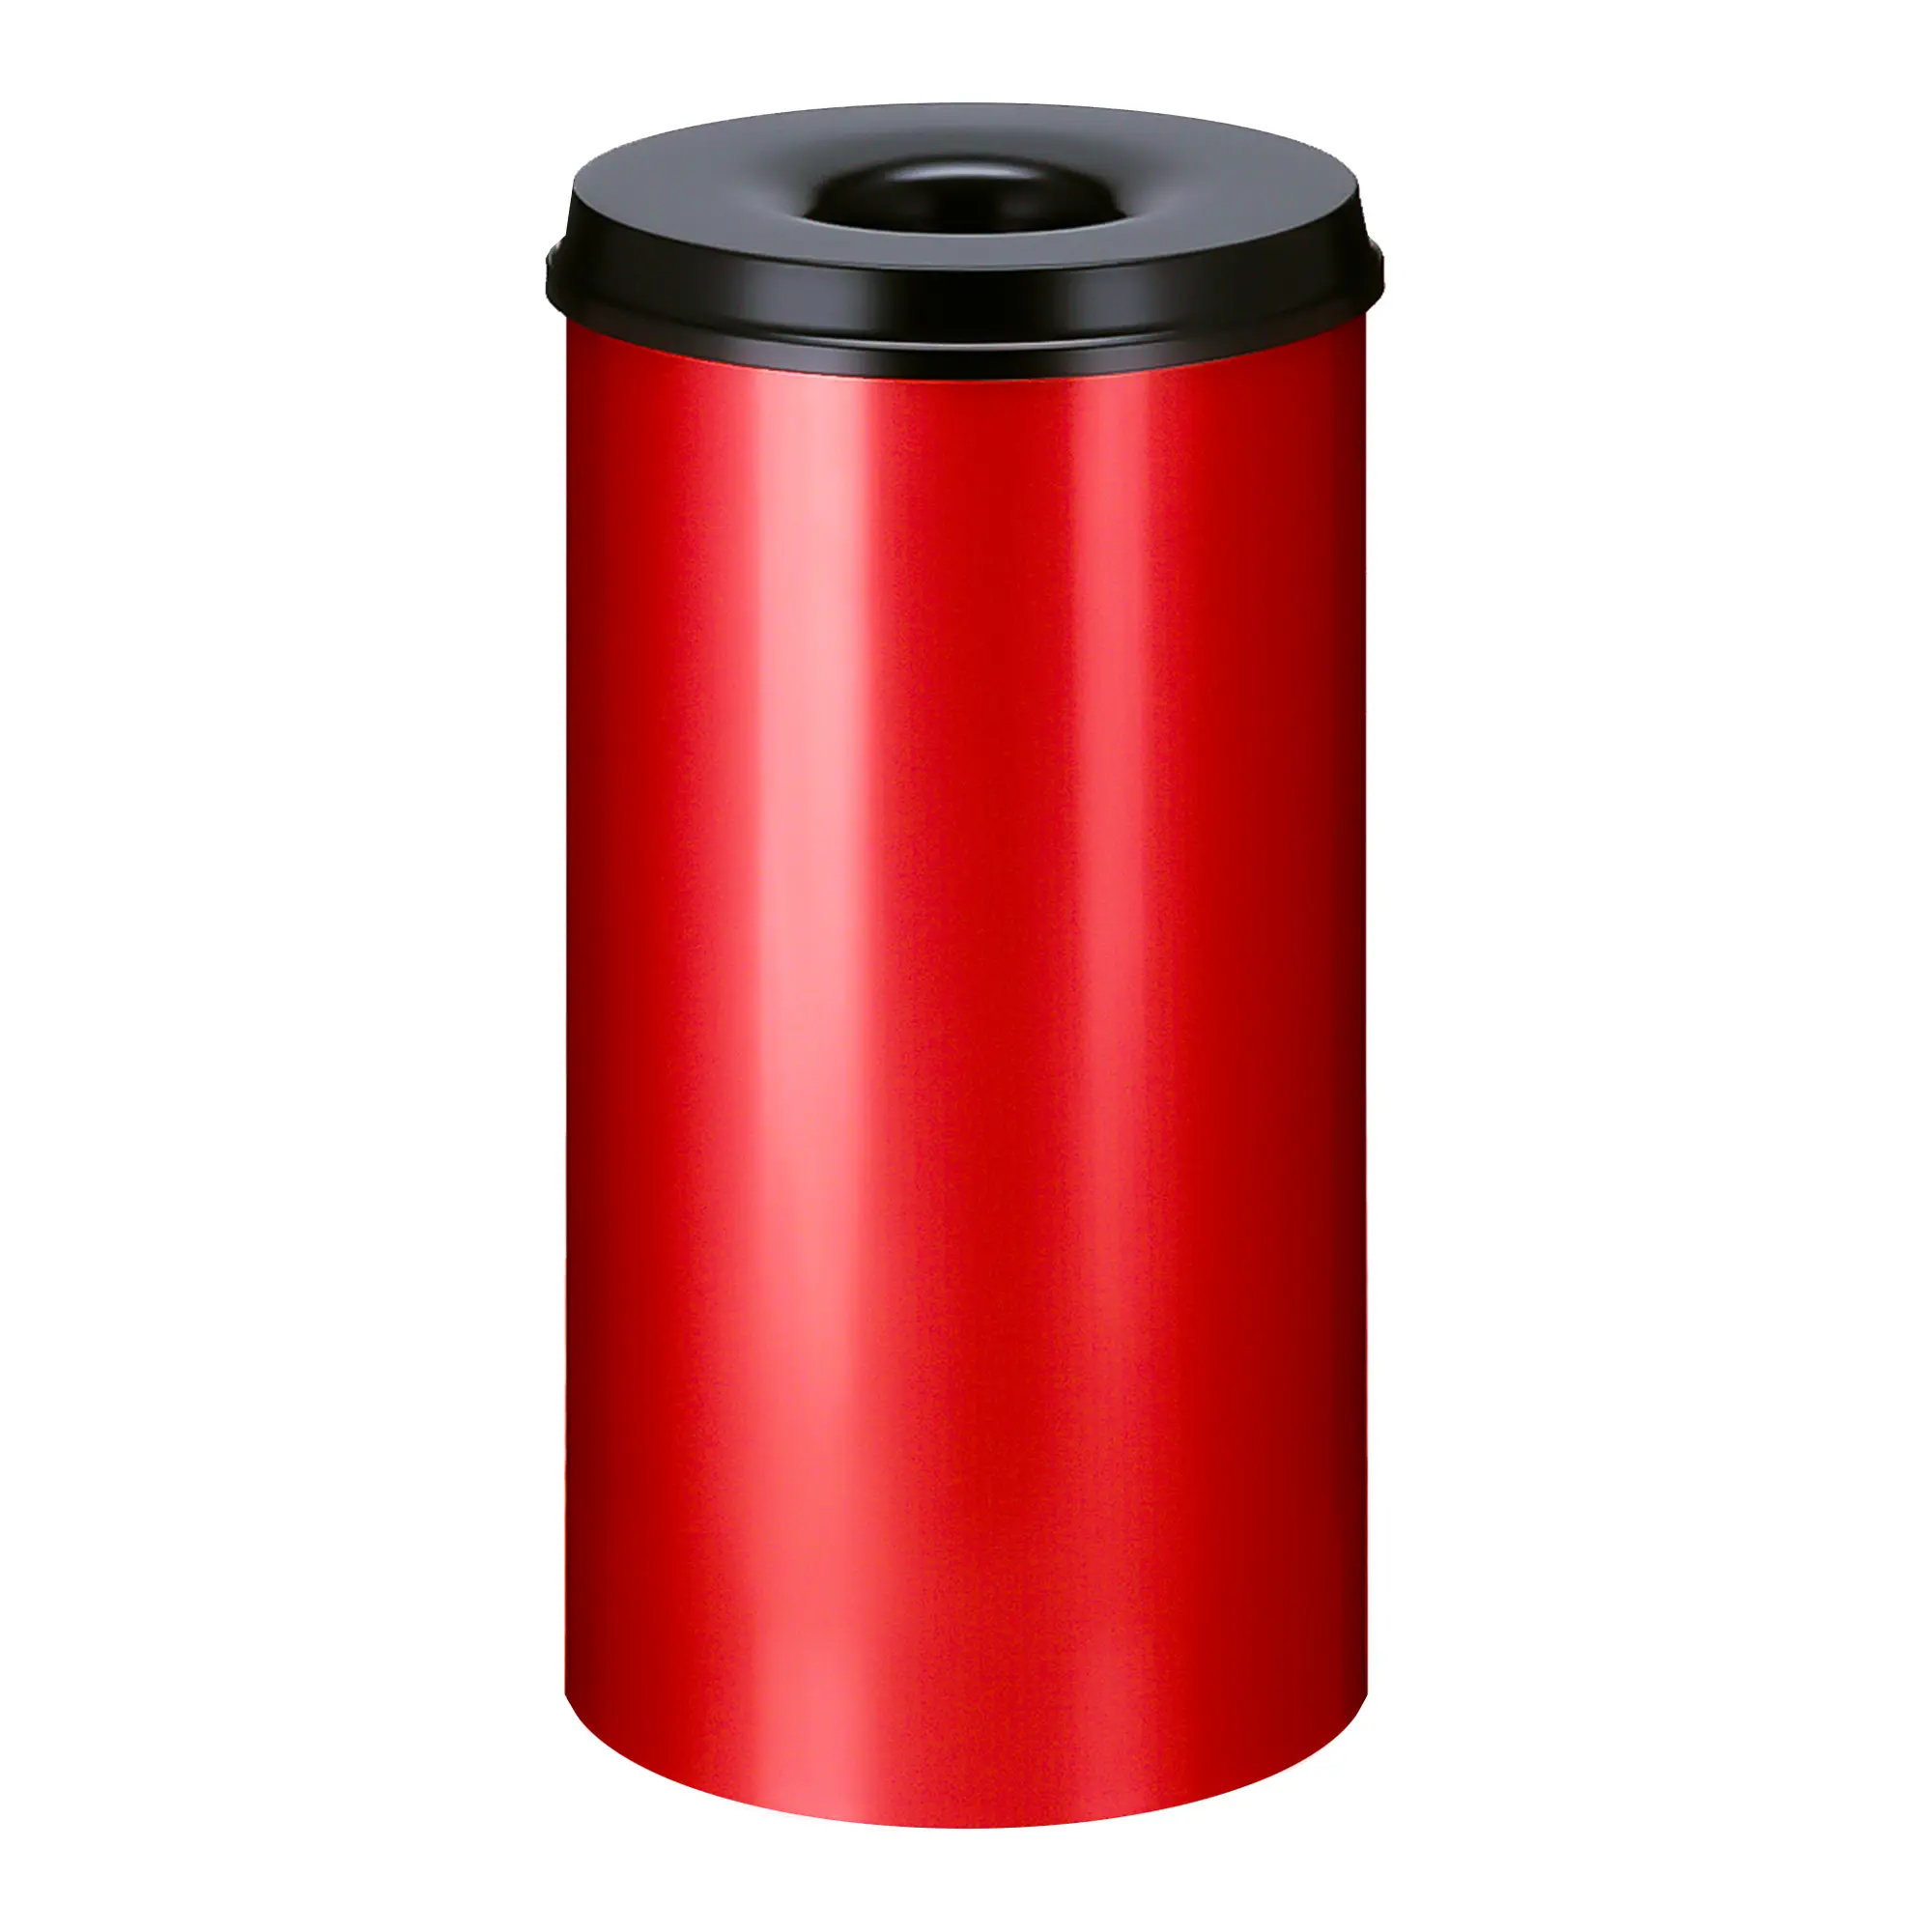 V-Part Feuerlöschender Papierkorb 50 Liter rot/schwarz 31001972_1